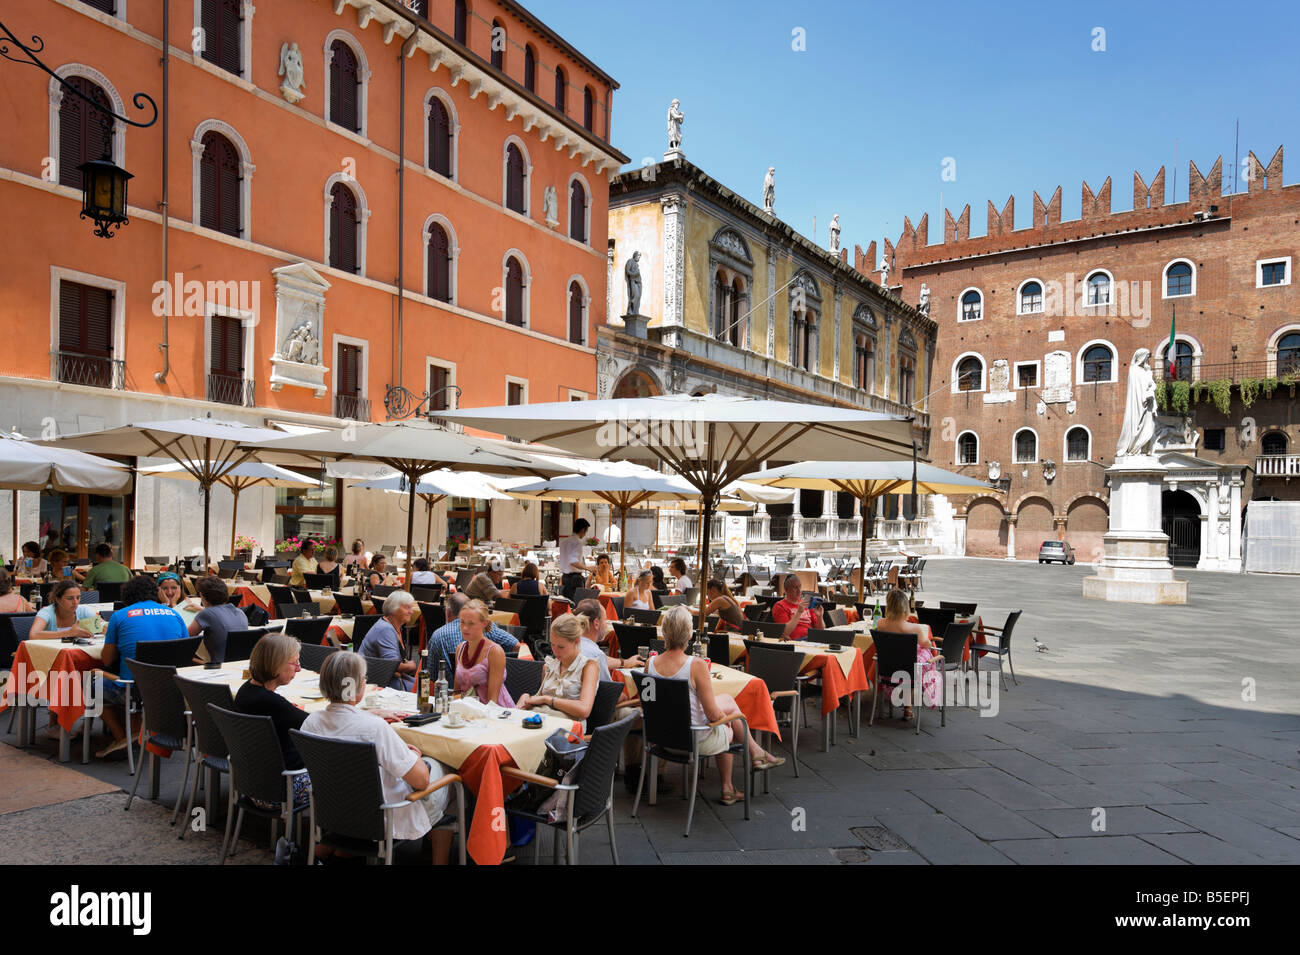 Caffe Dante restaurant in Piazza dei Signori (with the Loggia del Consiglio and Palazzo degli Scaligeri behind), Verona, Italy Stock Photo